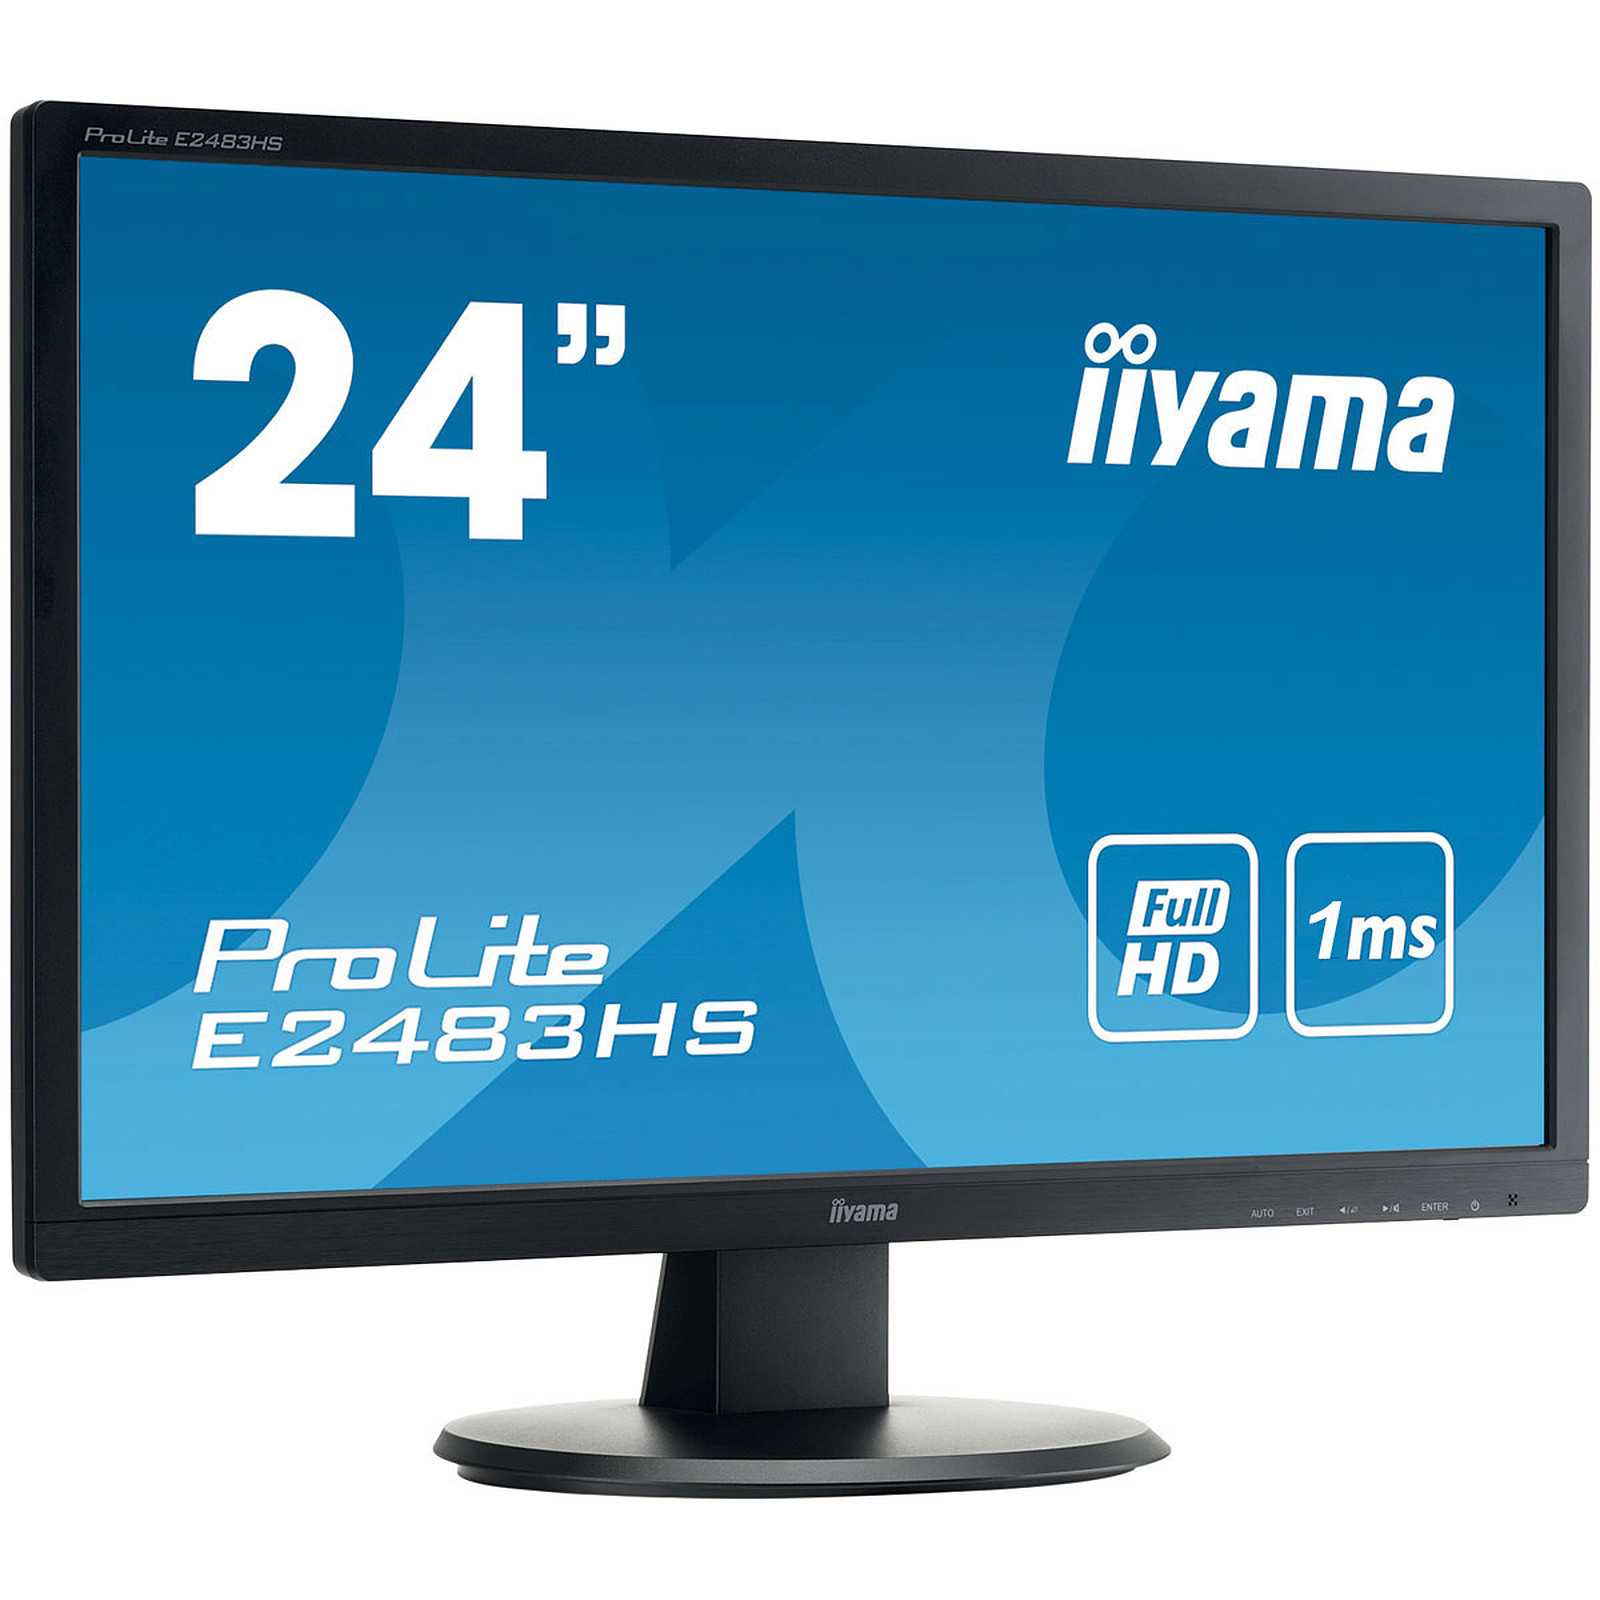 Жк монитор 23" iiyama prolite t2336msc-b1 — купить, цена и характеристики, отзывы